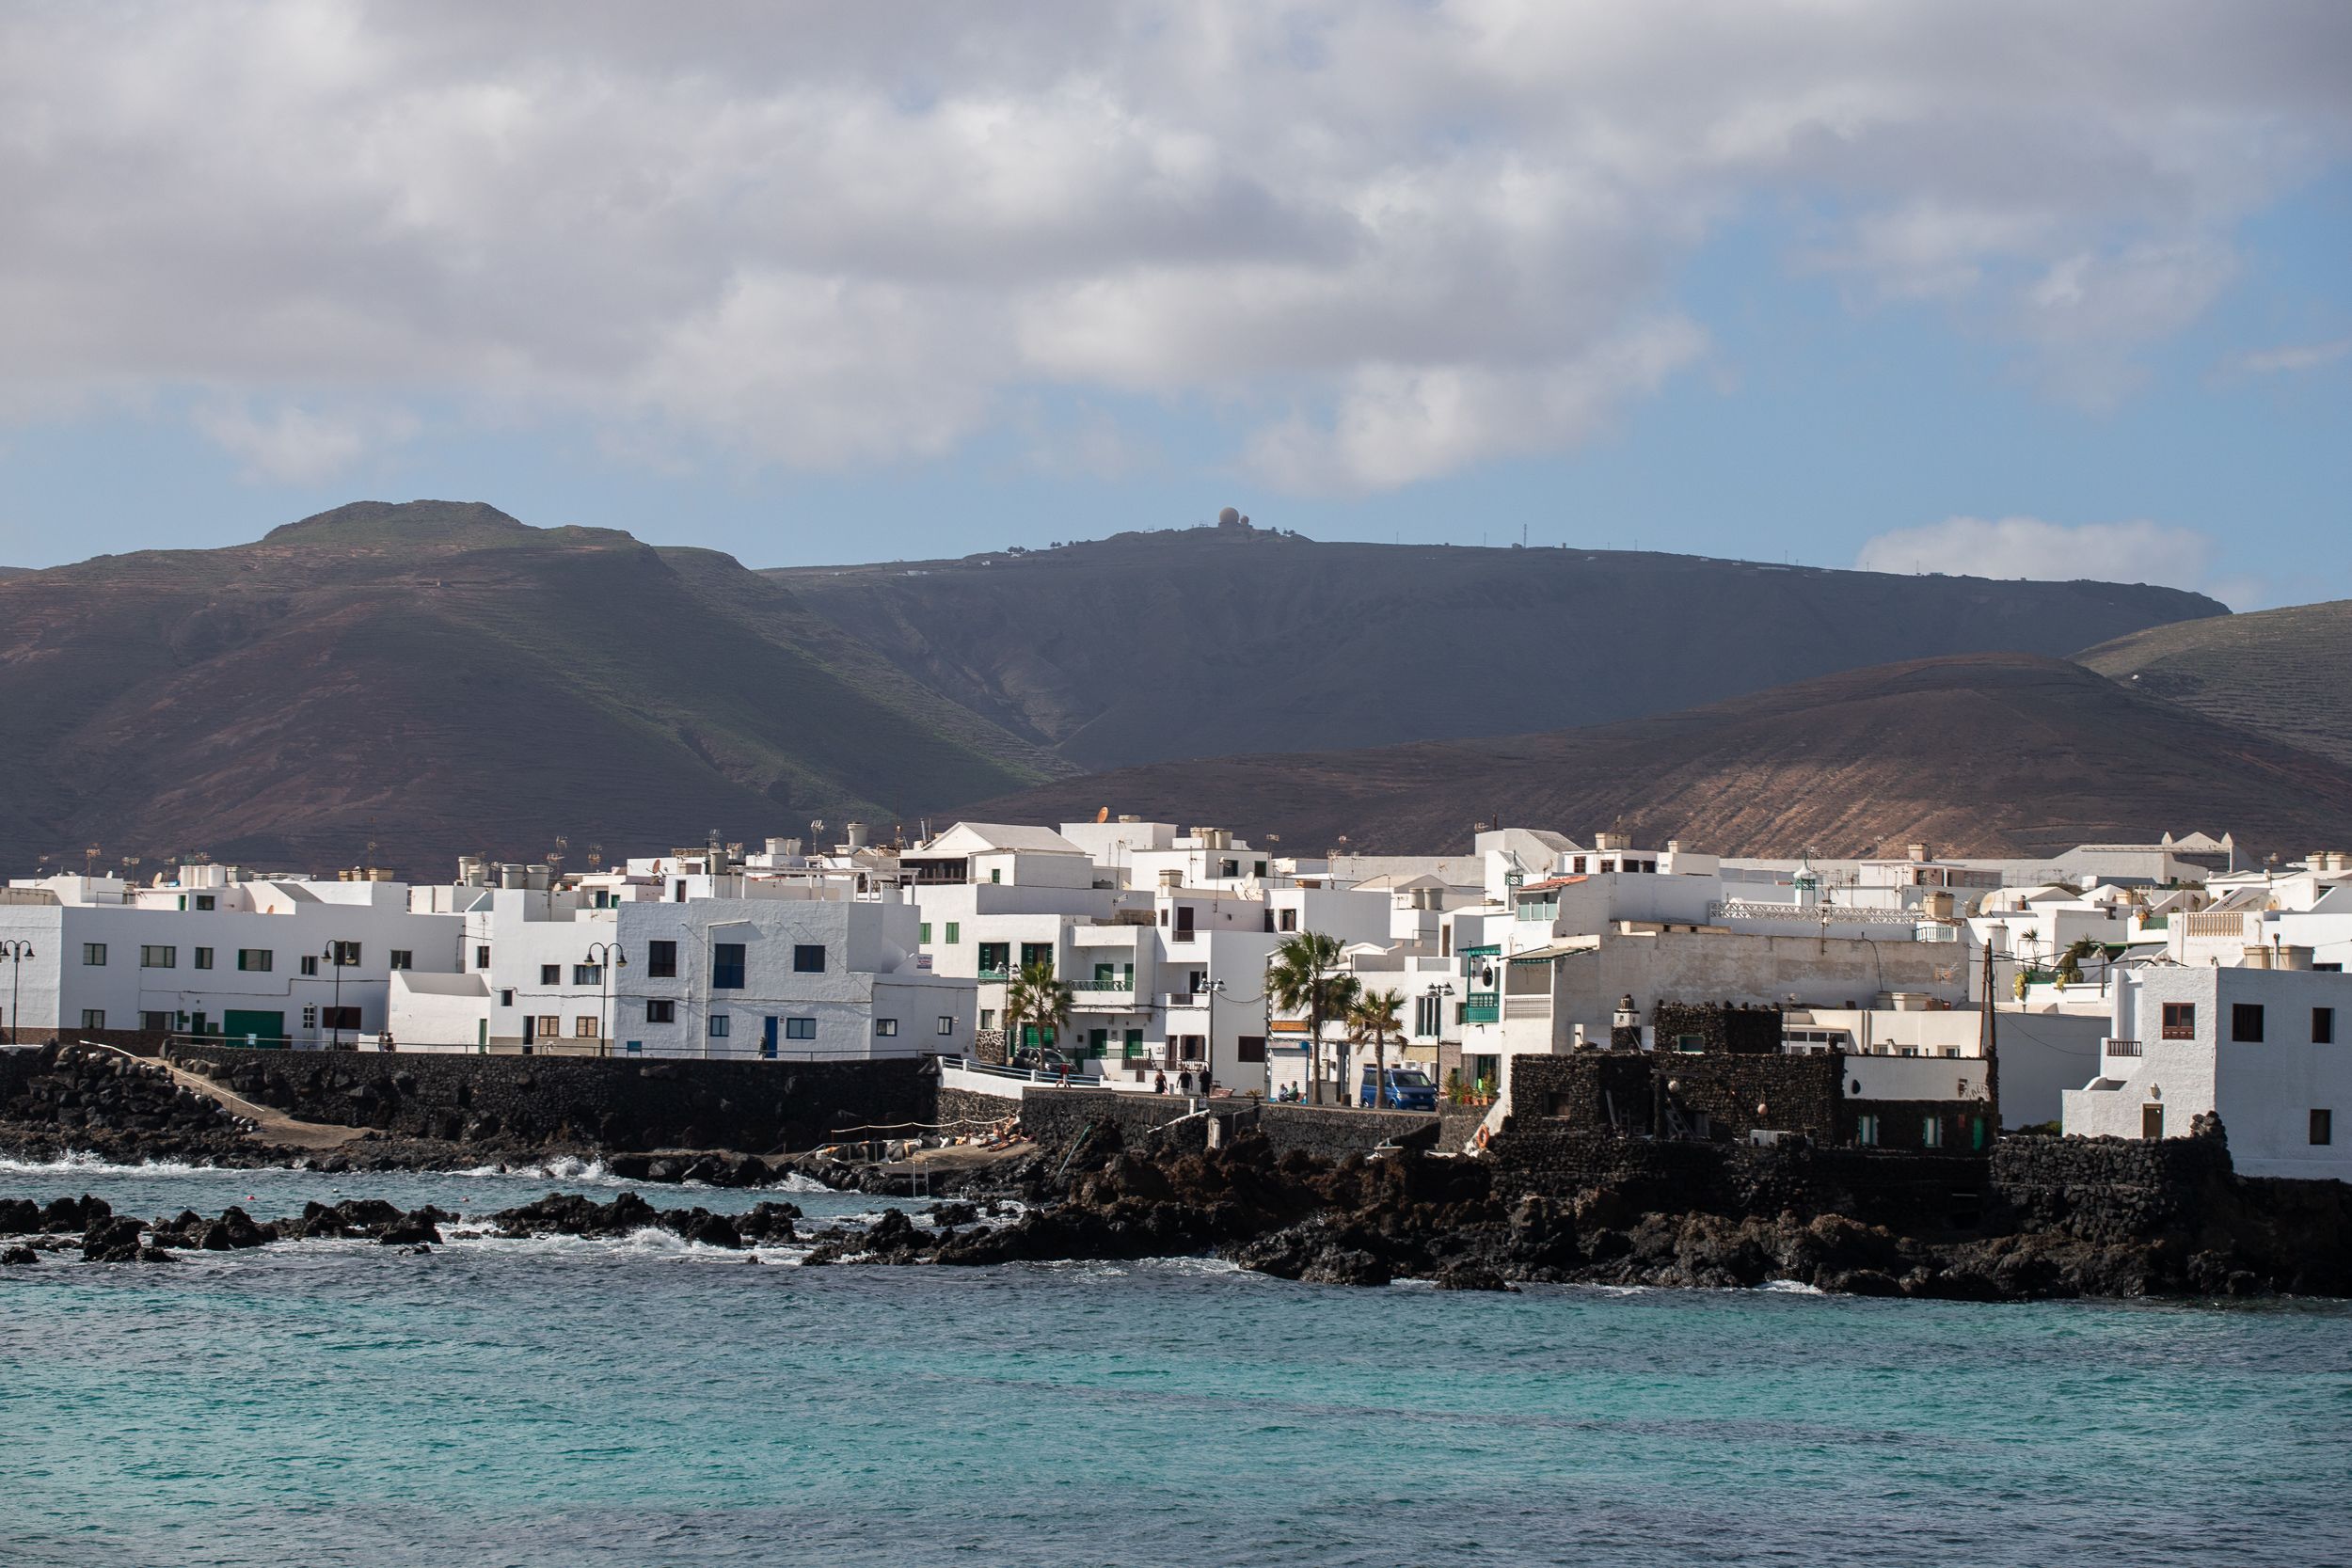 Viviendas junto al mar en el litoral de Punta Mujeres, en Lanzarote. Foto: Andrea Domínguez.